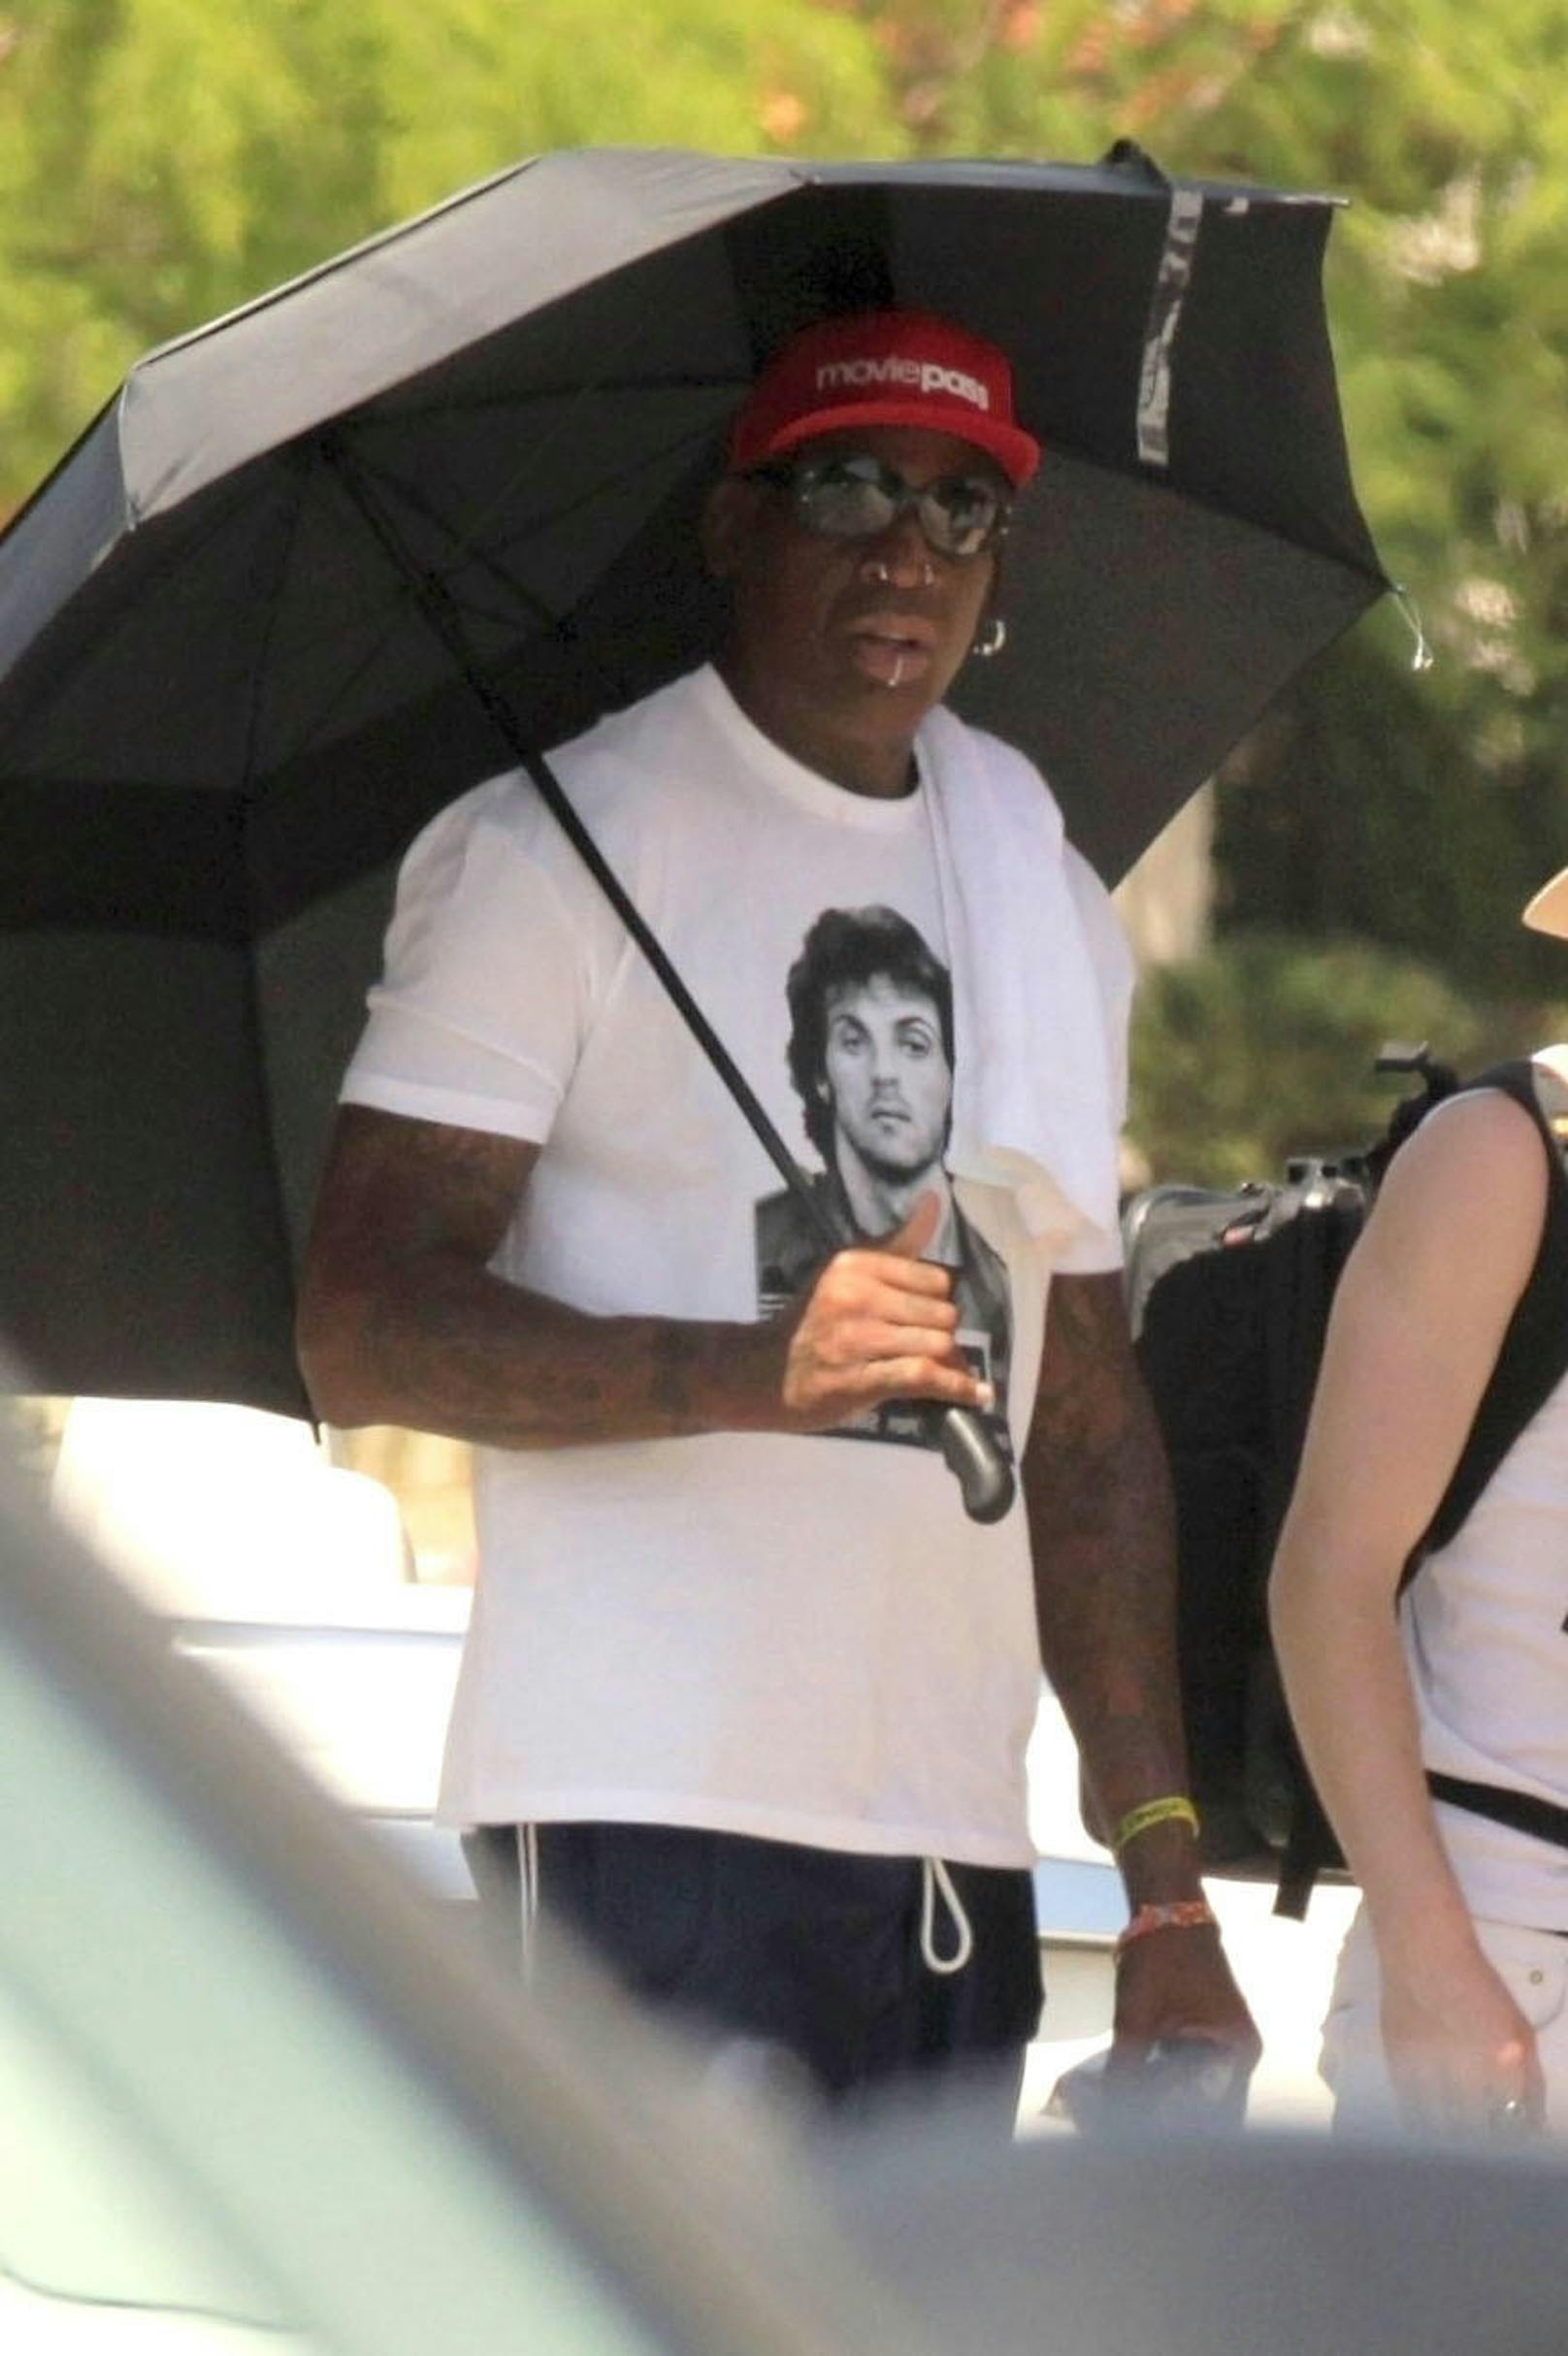 Kim Jong-un: Dennis Rodman setzte sich mit Sly-Stallone-Shirt und Regenschirm in Szene. Ob er den wohl am Eingang abgeben musste?